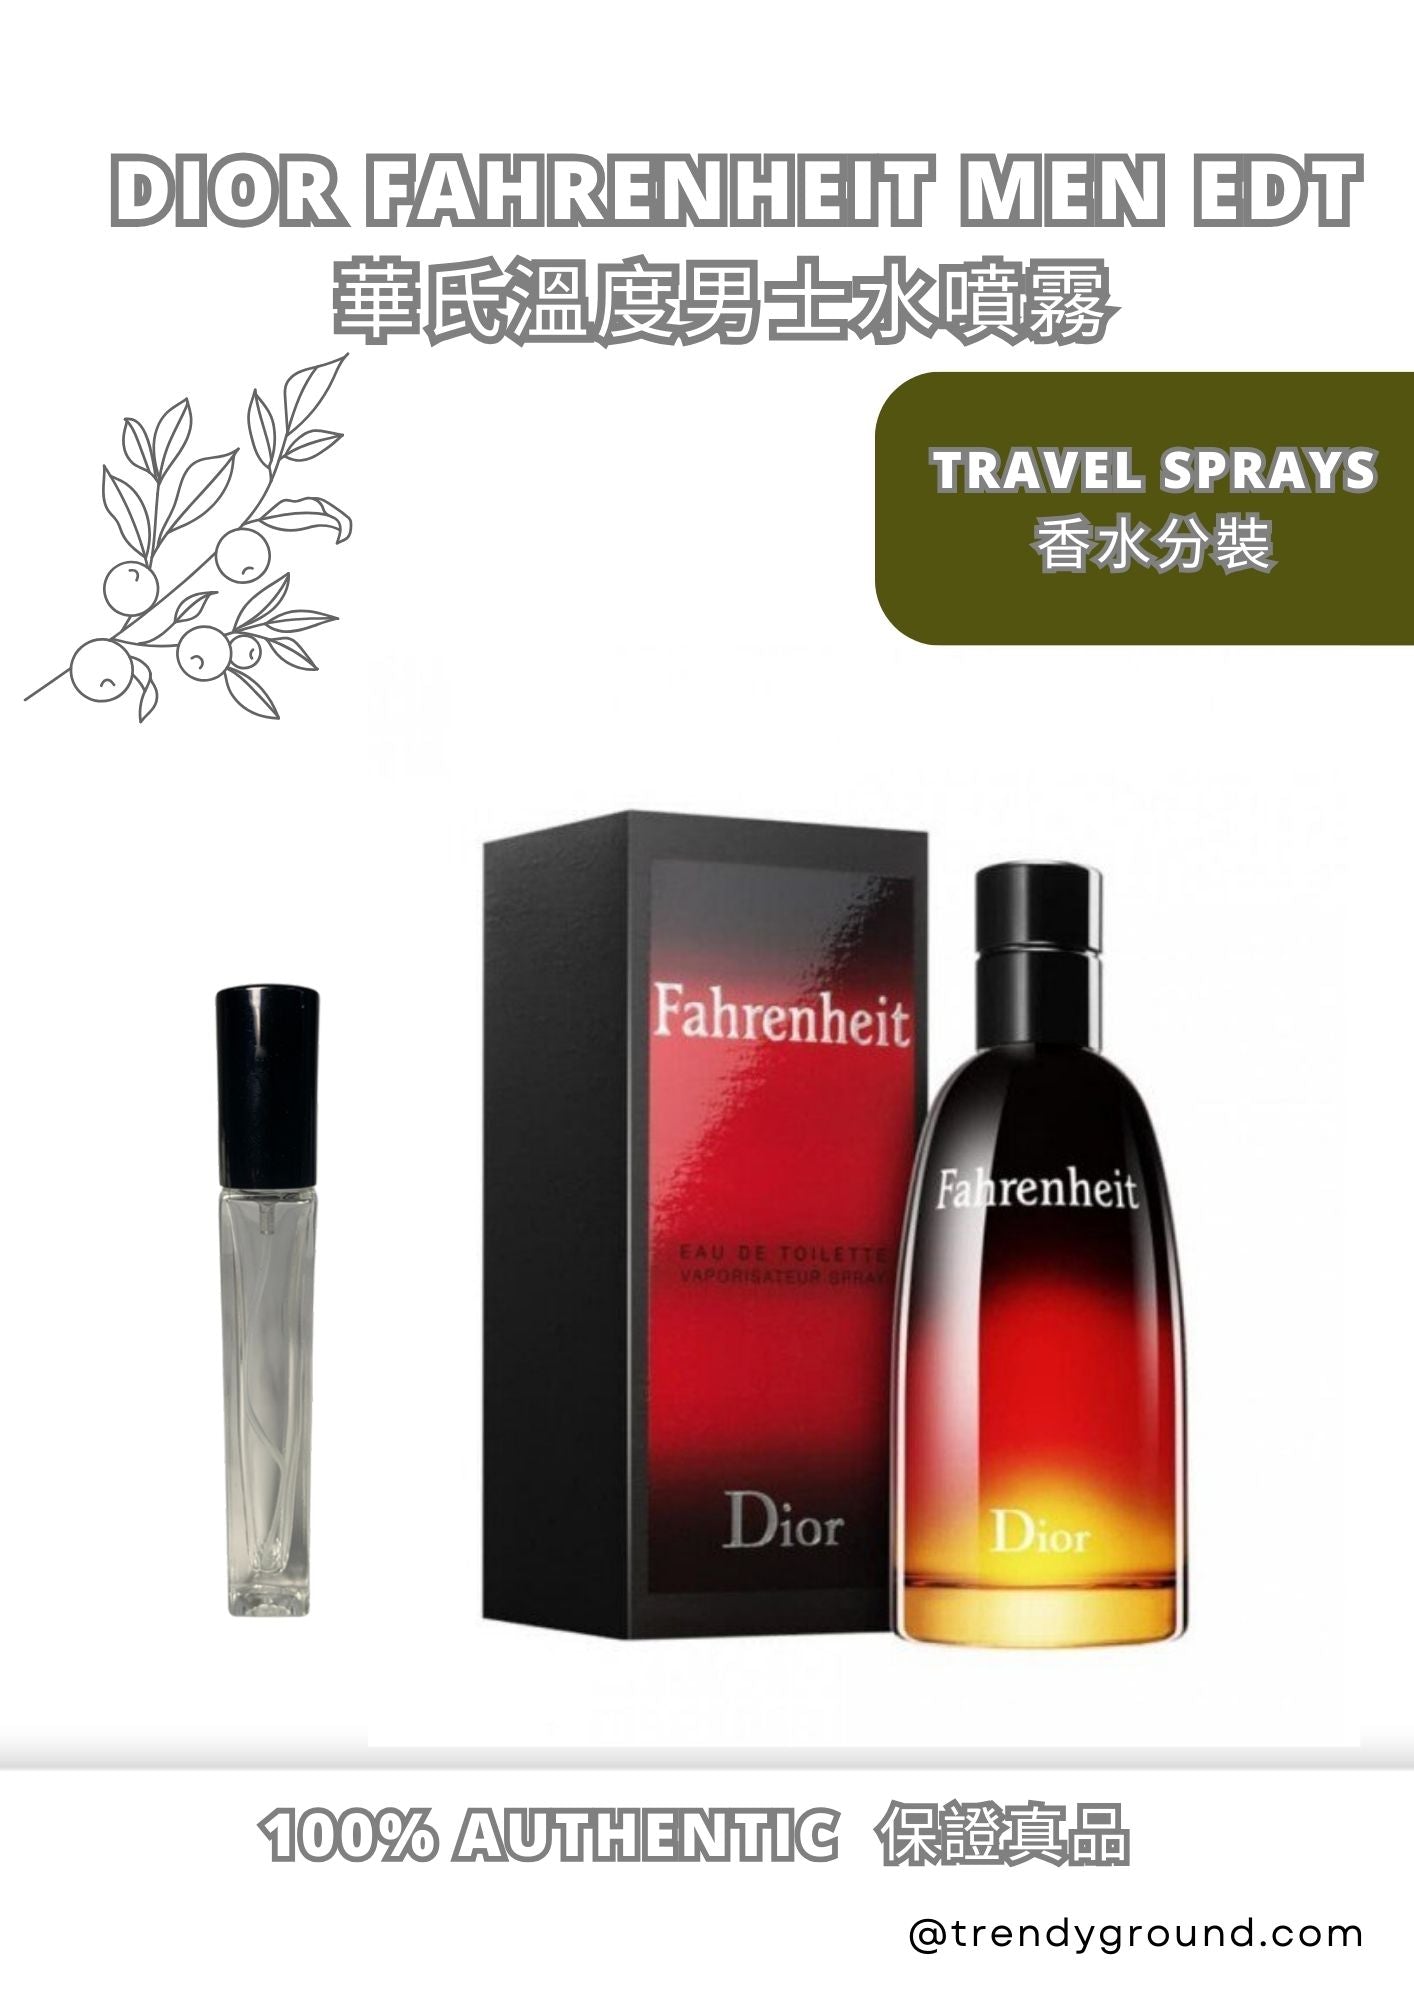 Christian Dior Fahrenheit EDT Travel Sprays Sample Men 絕版男性迪奧香水 分裝瓶